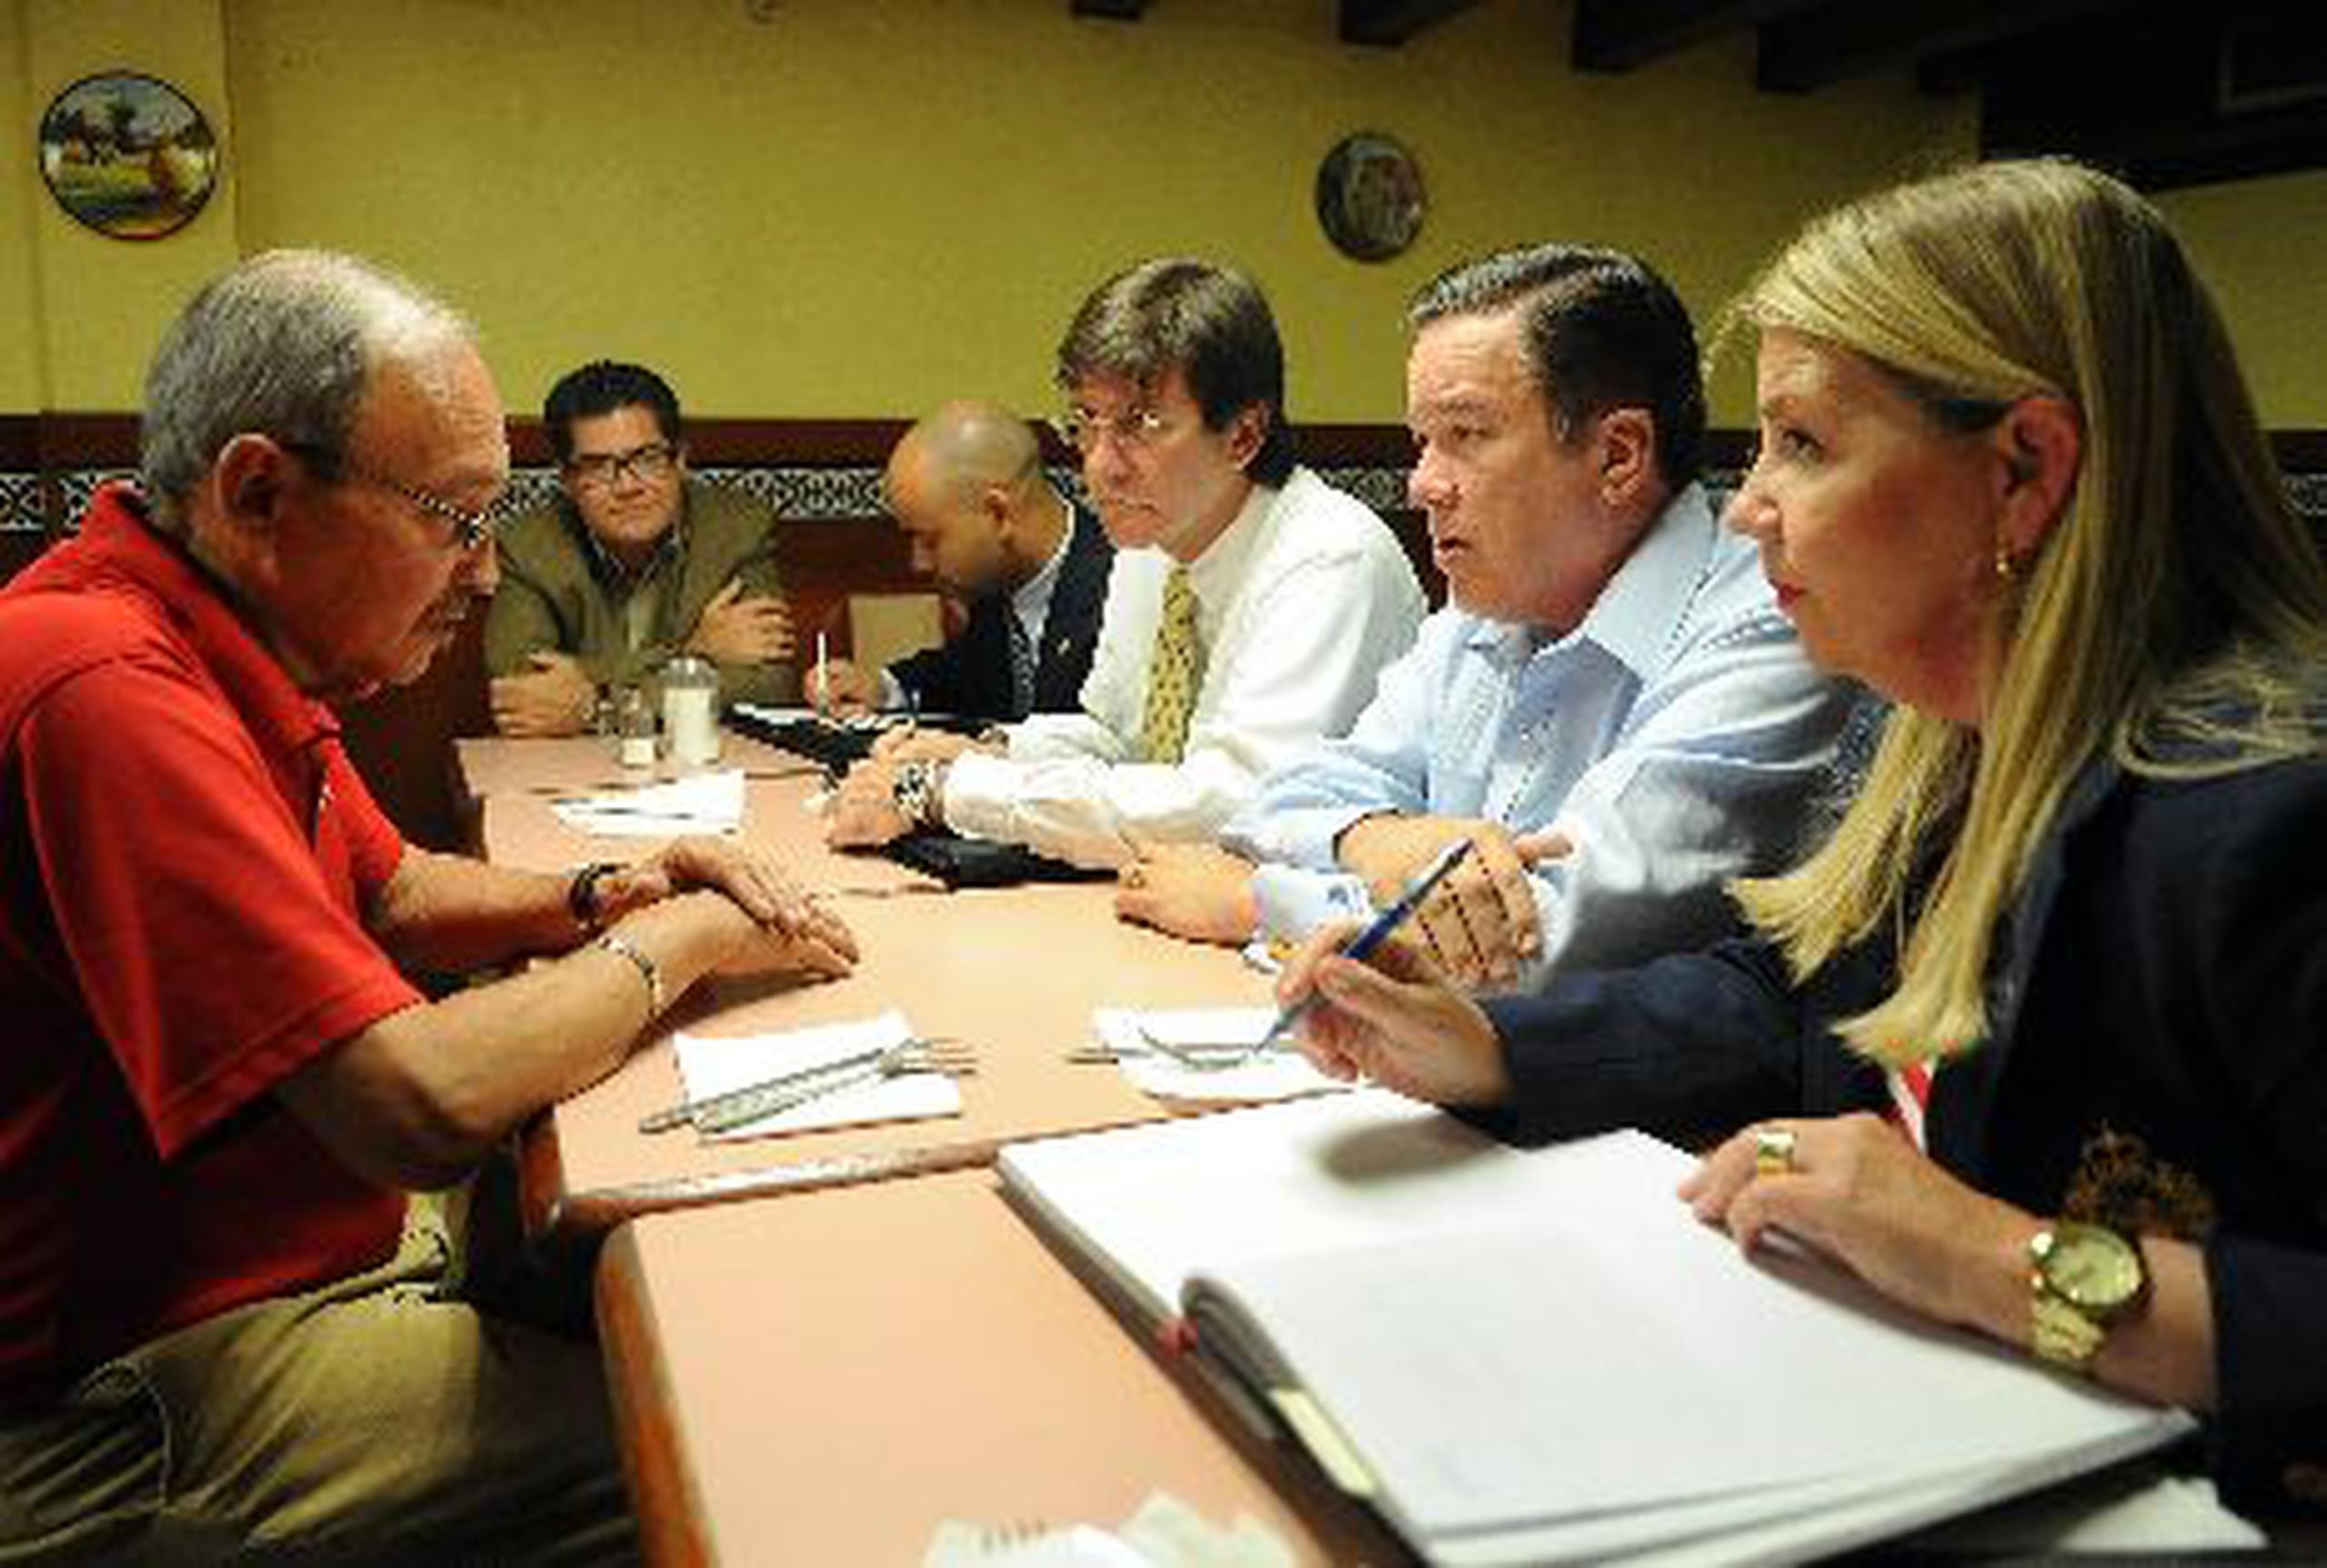 El gerente de La Bombonera, José López, conversa con funcionarios gubernamentales sobre la  situación actual del negocio. <font color="yellow">(Primera Hora / Ana María Abruña Reyes)</font>